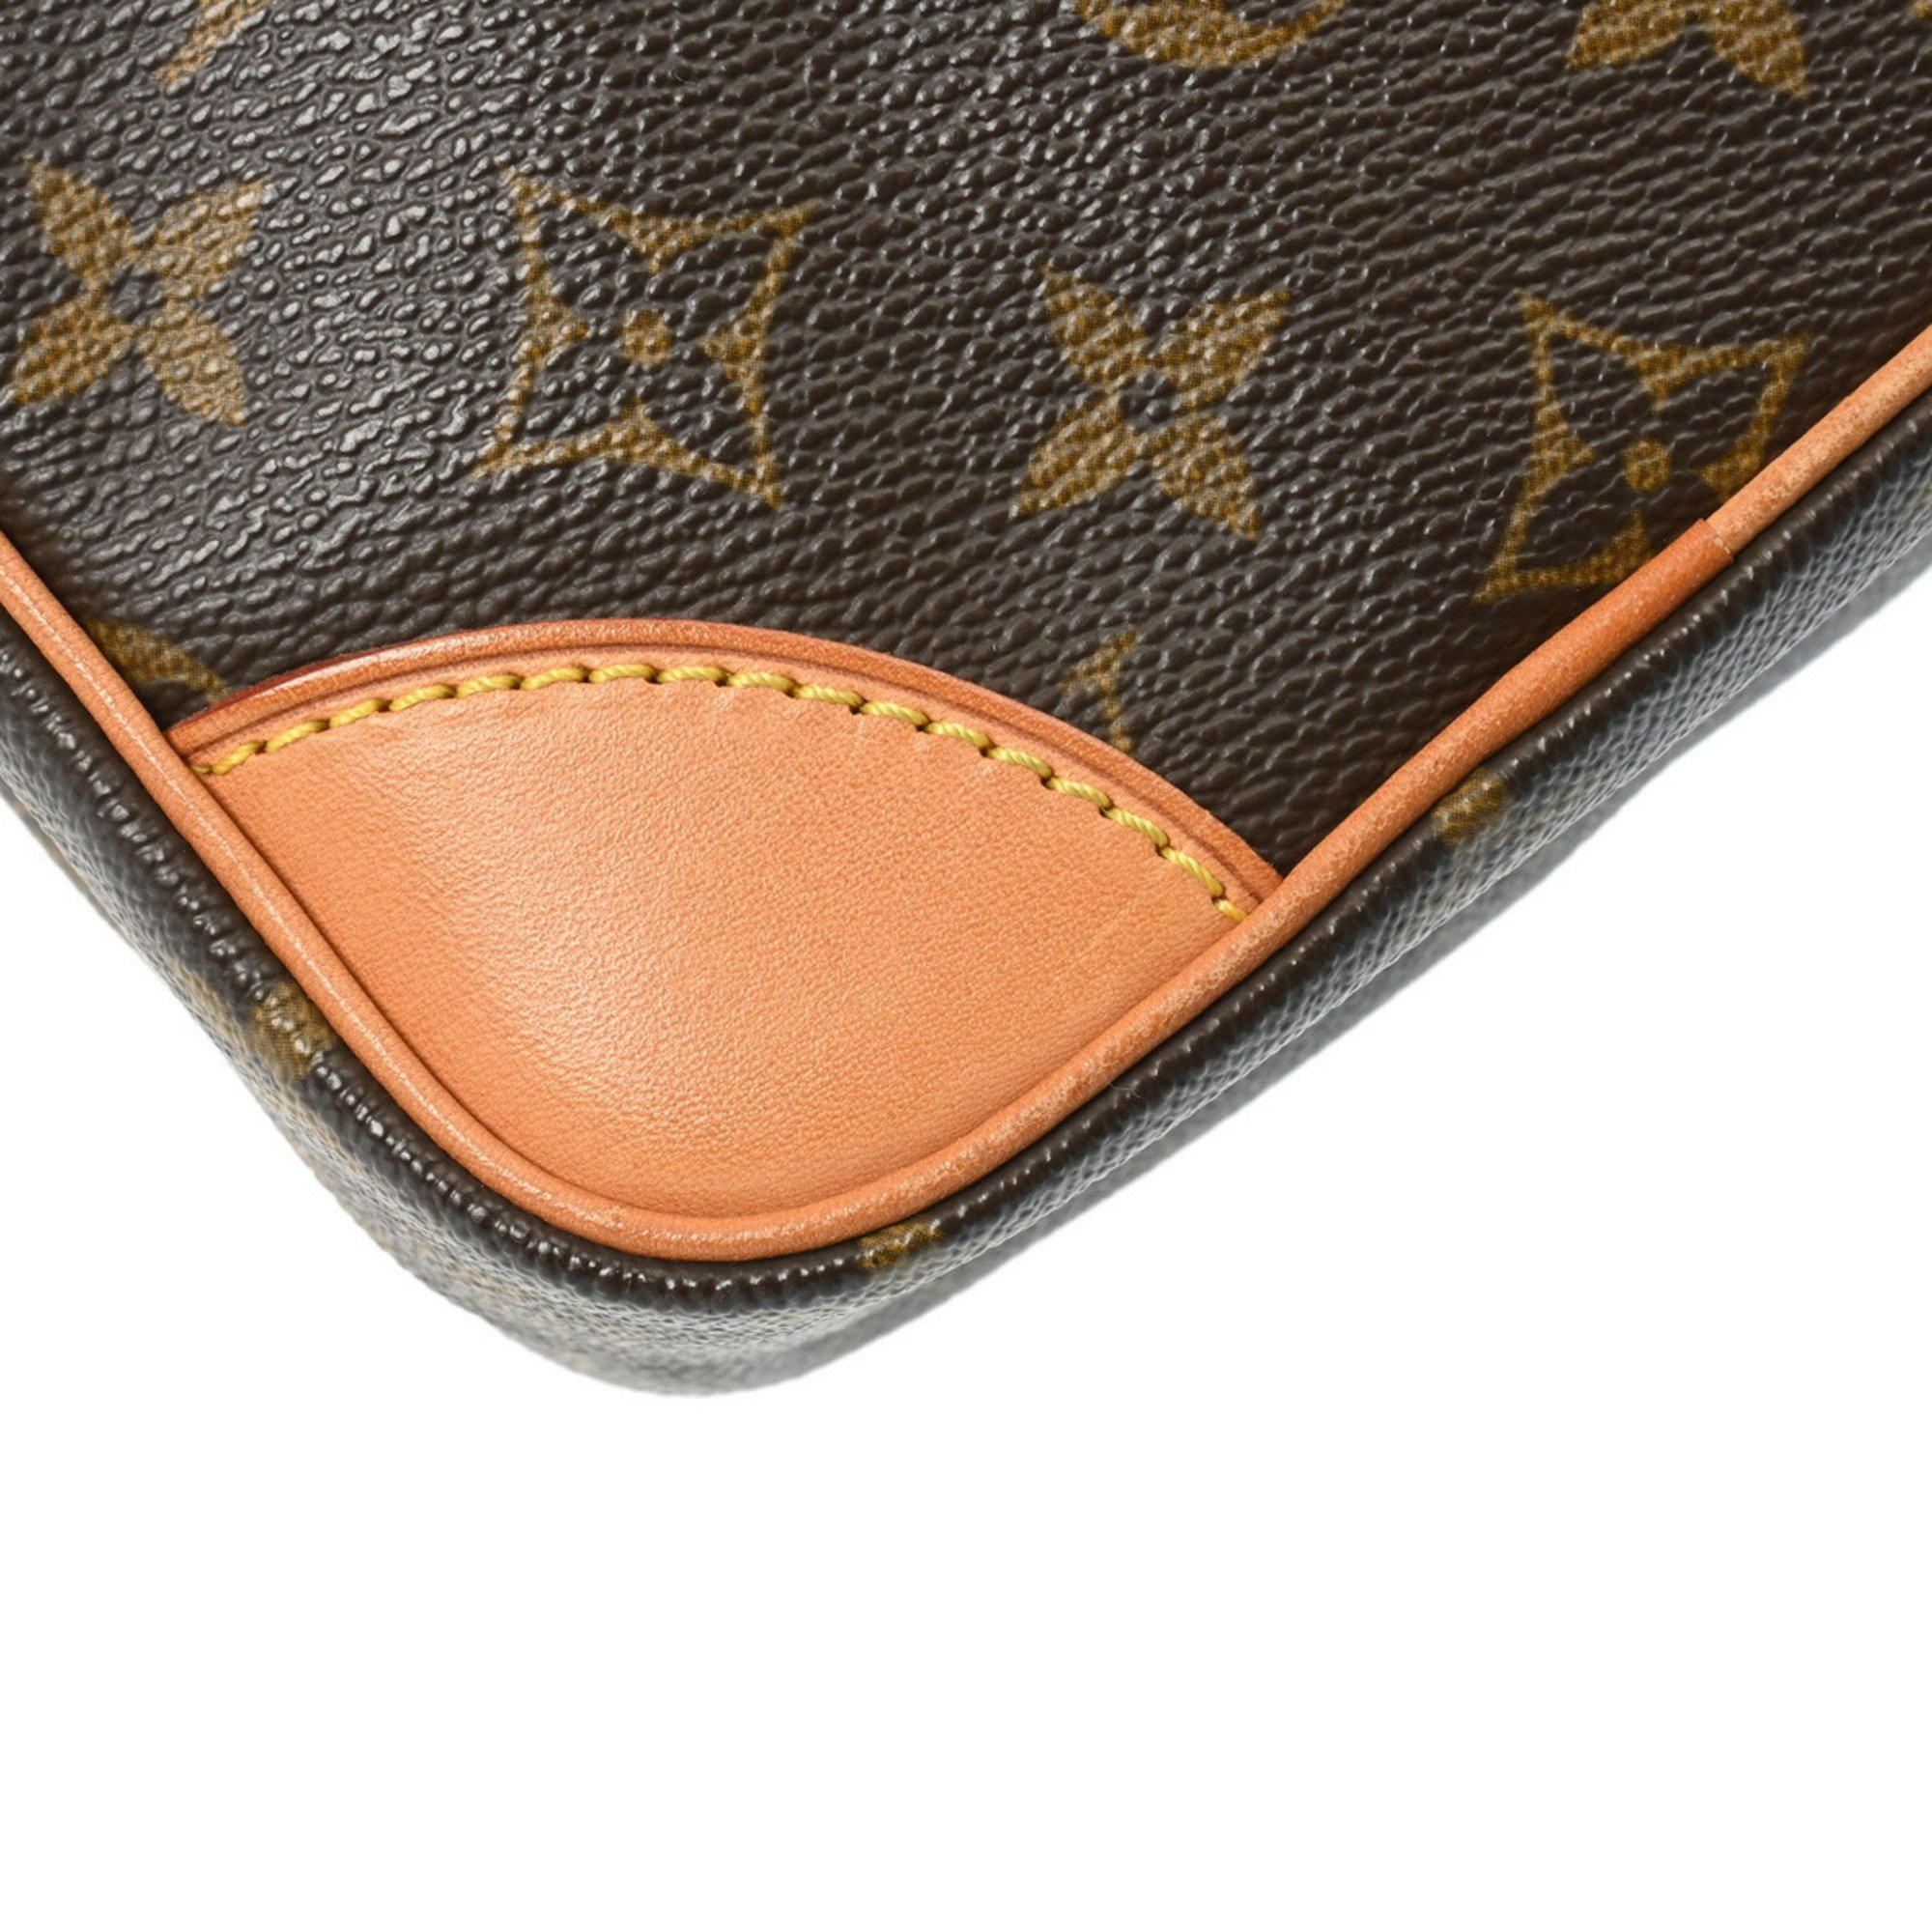 LOUIS VUITTON Louis Vuitton Monogram Amazon Brown M45236 Women's Canvas Shoulder Bag